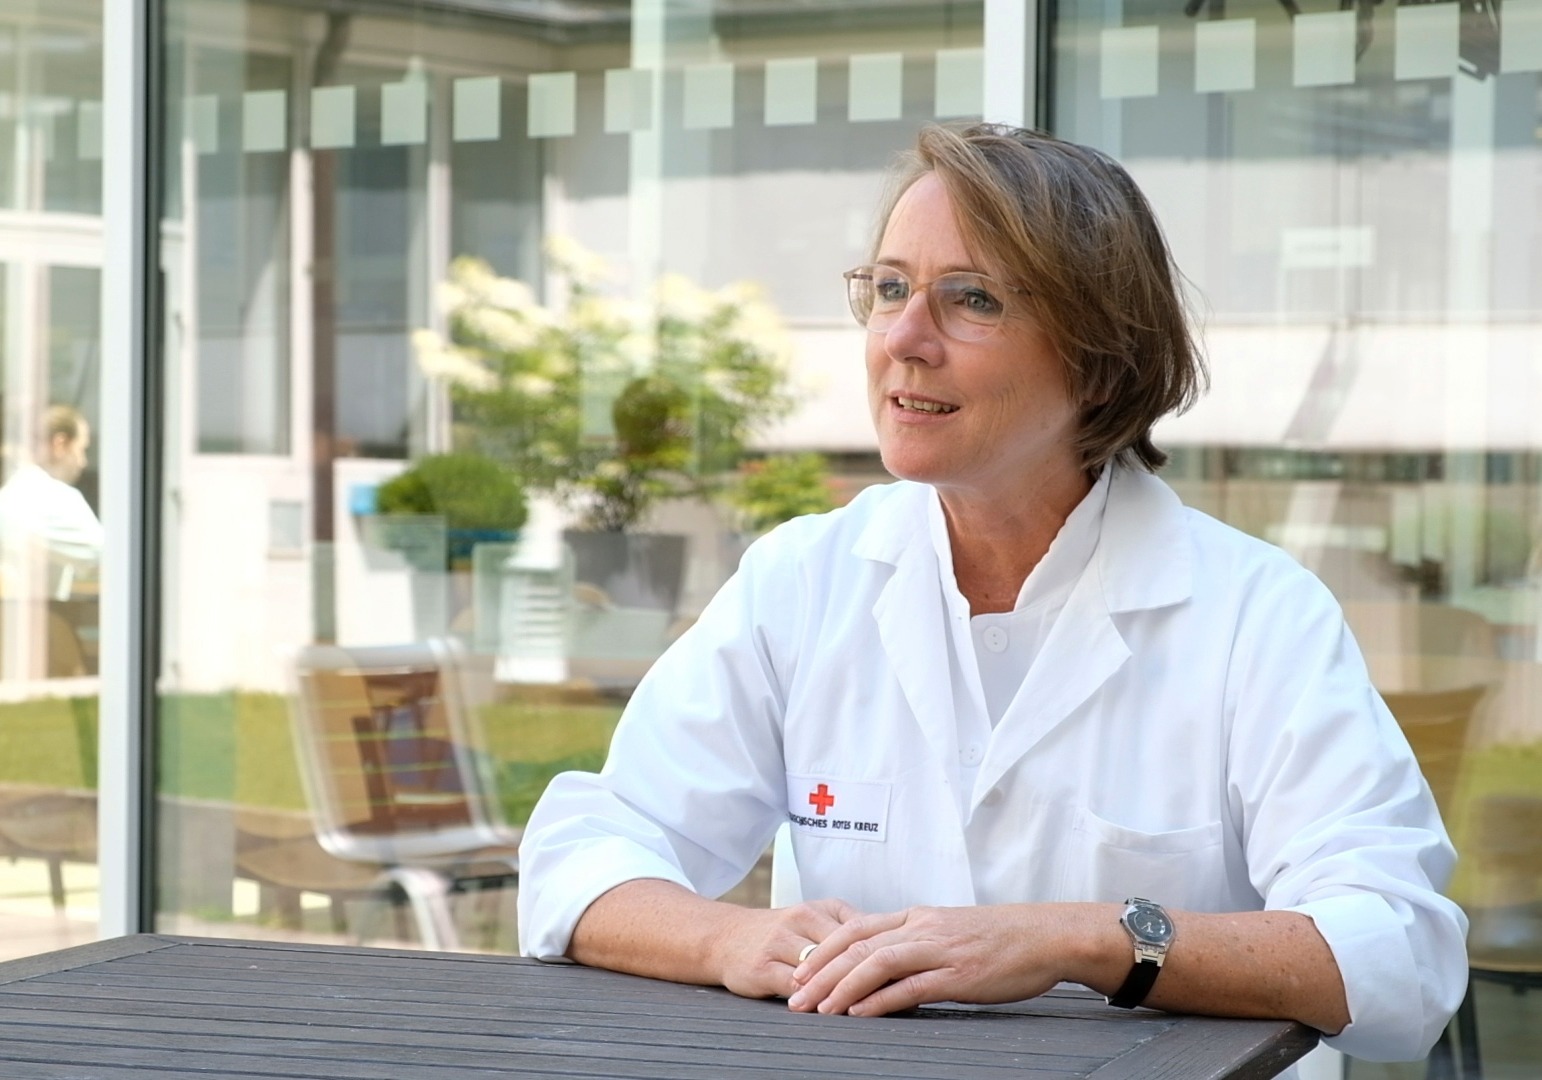 Ursula Kreil, Leiterin der Abnahme in der ÖRK-Blutspendezentrale, im Interview.